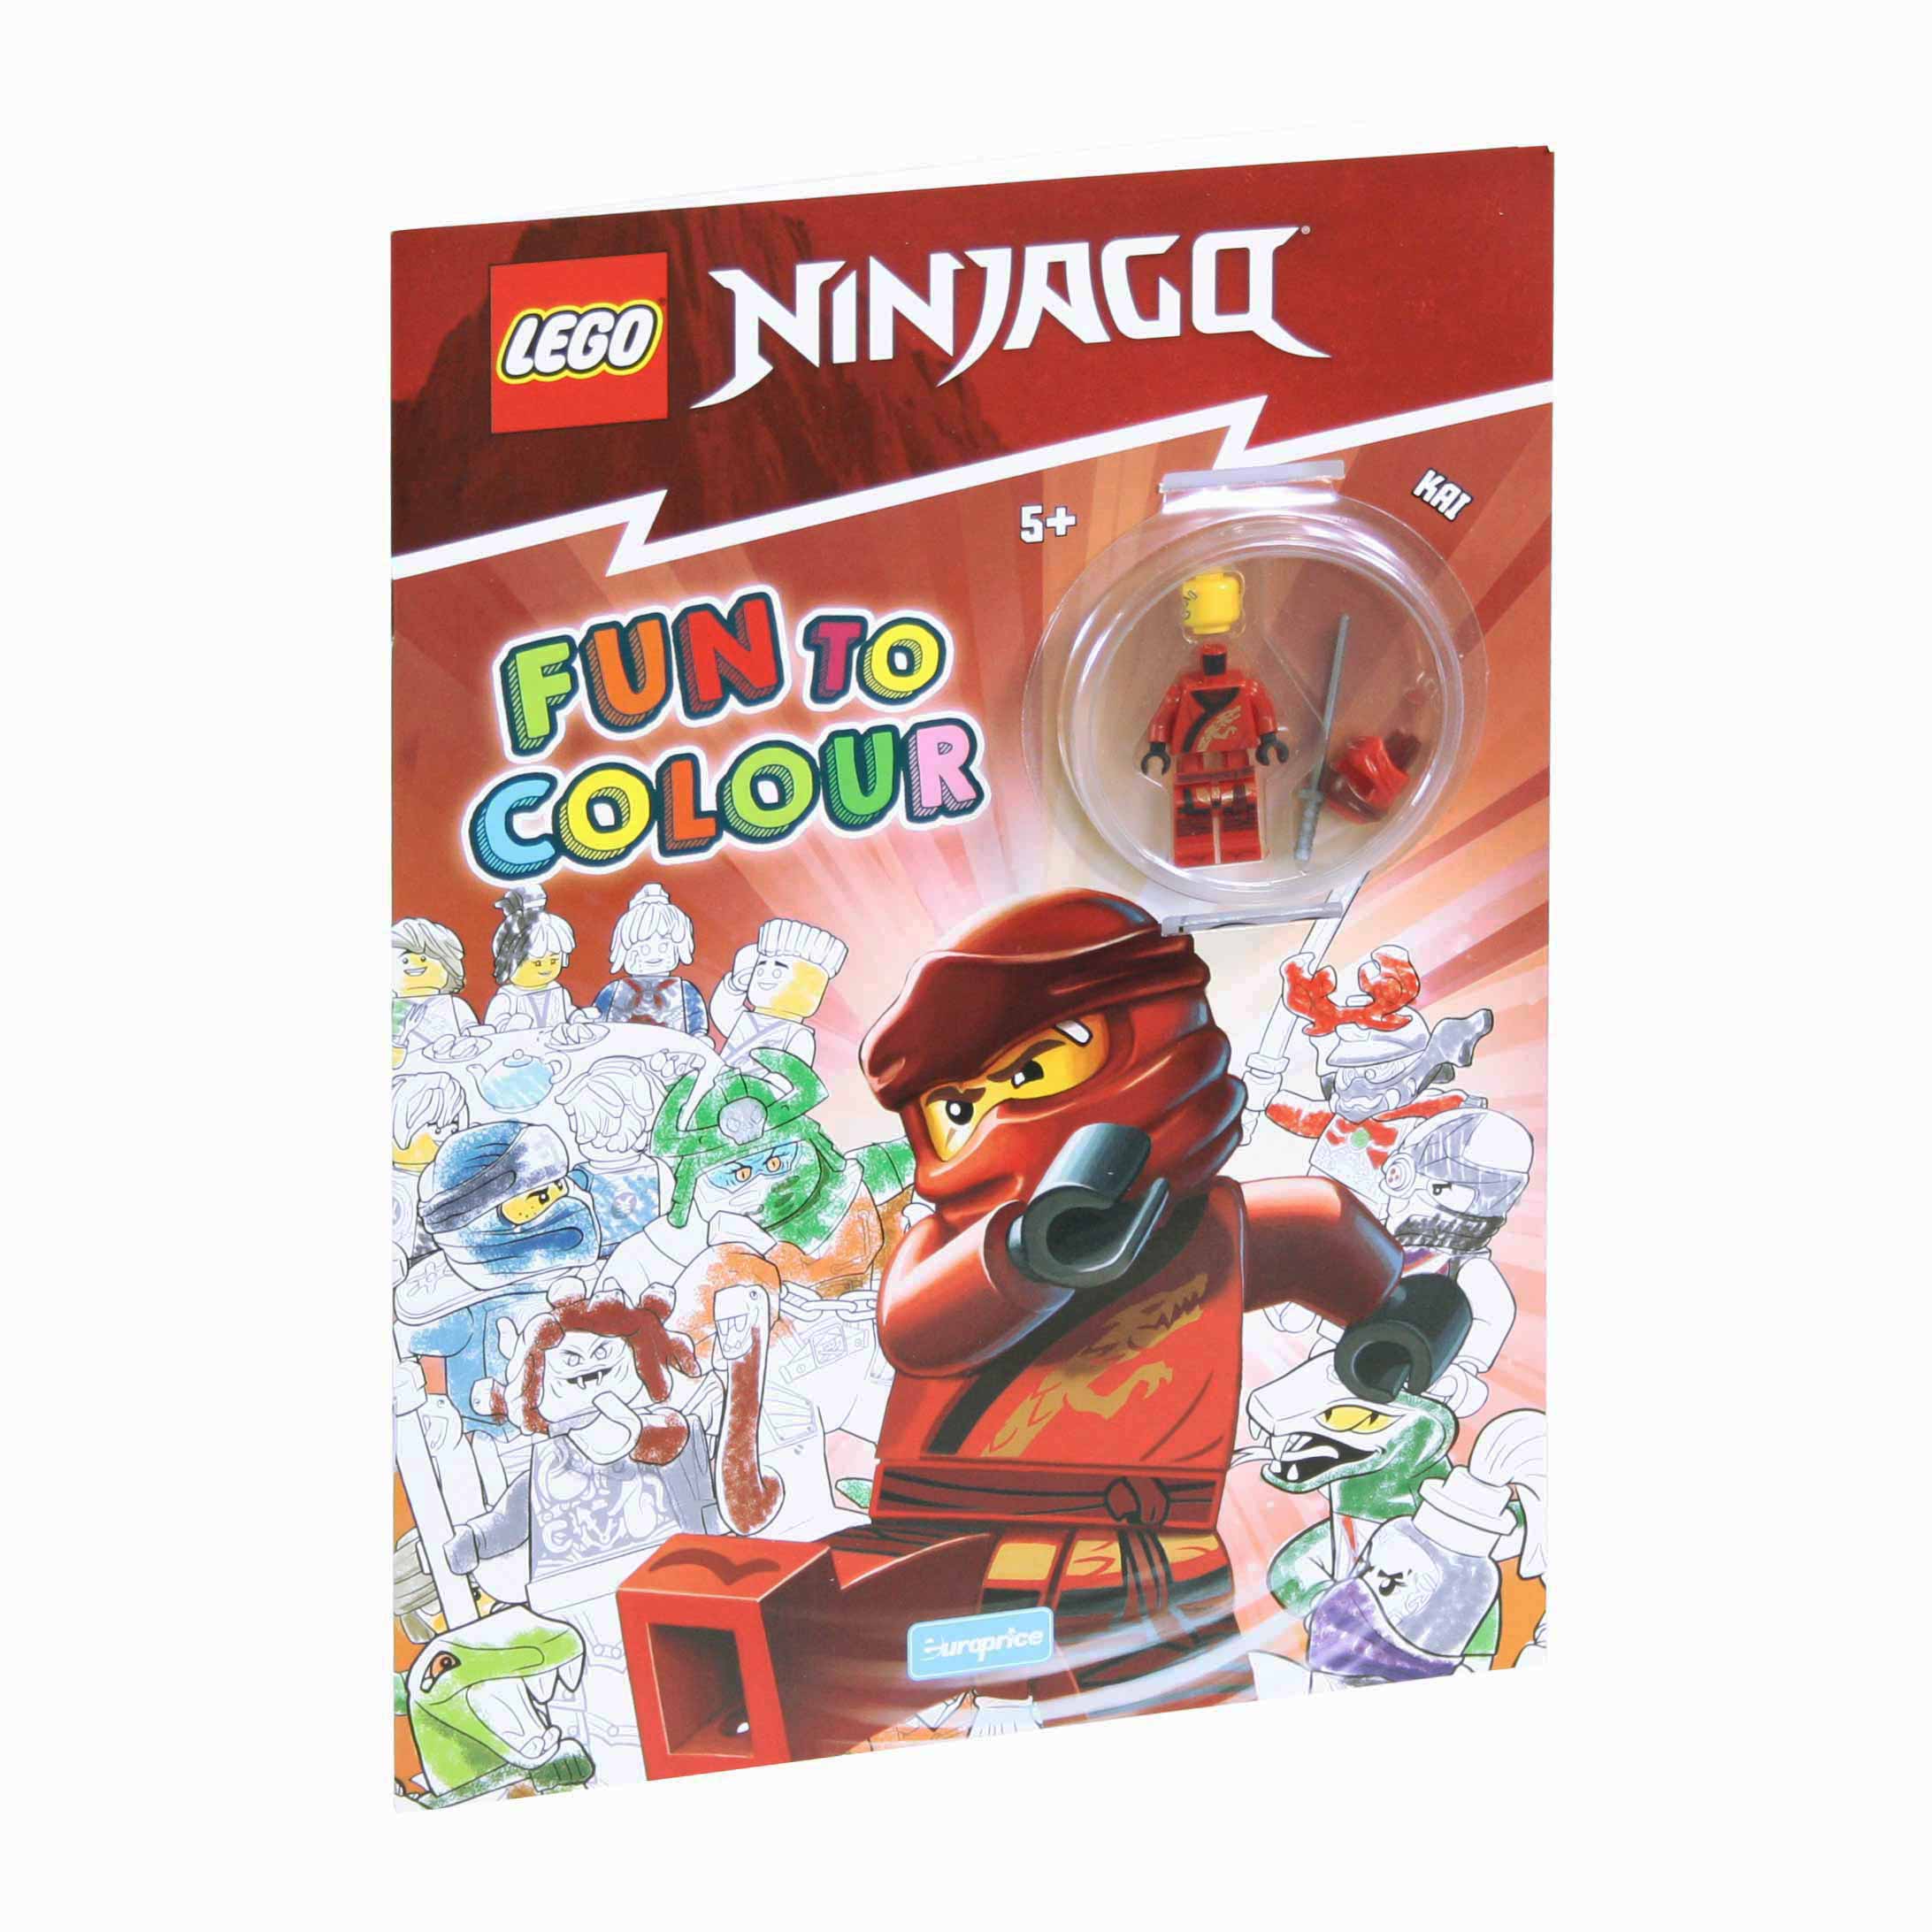 iMAGEM DA CAPA DO LIVRO DE PINTAR Lego Fun to Colour - Ninjago Kai com a minifigura